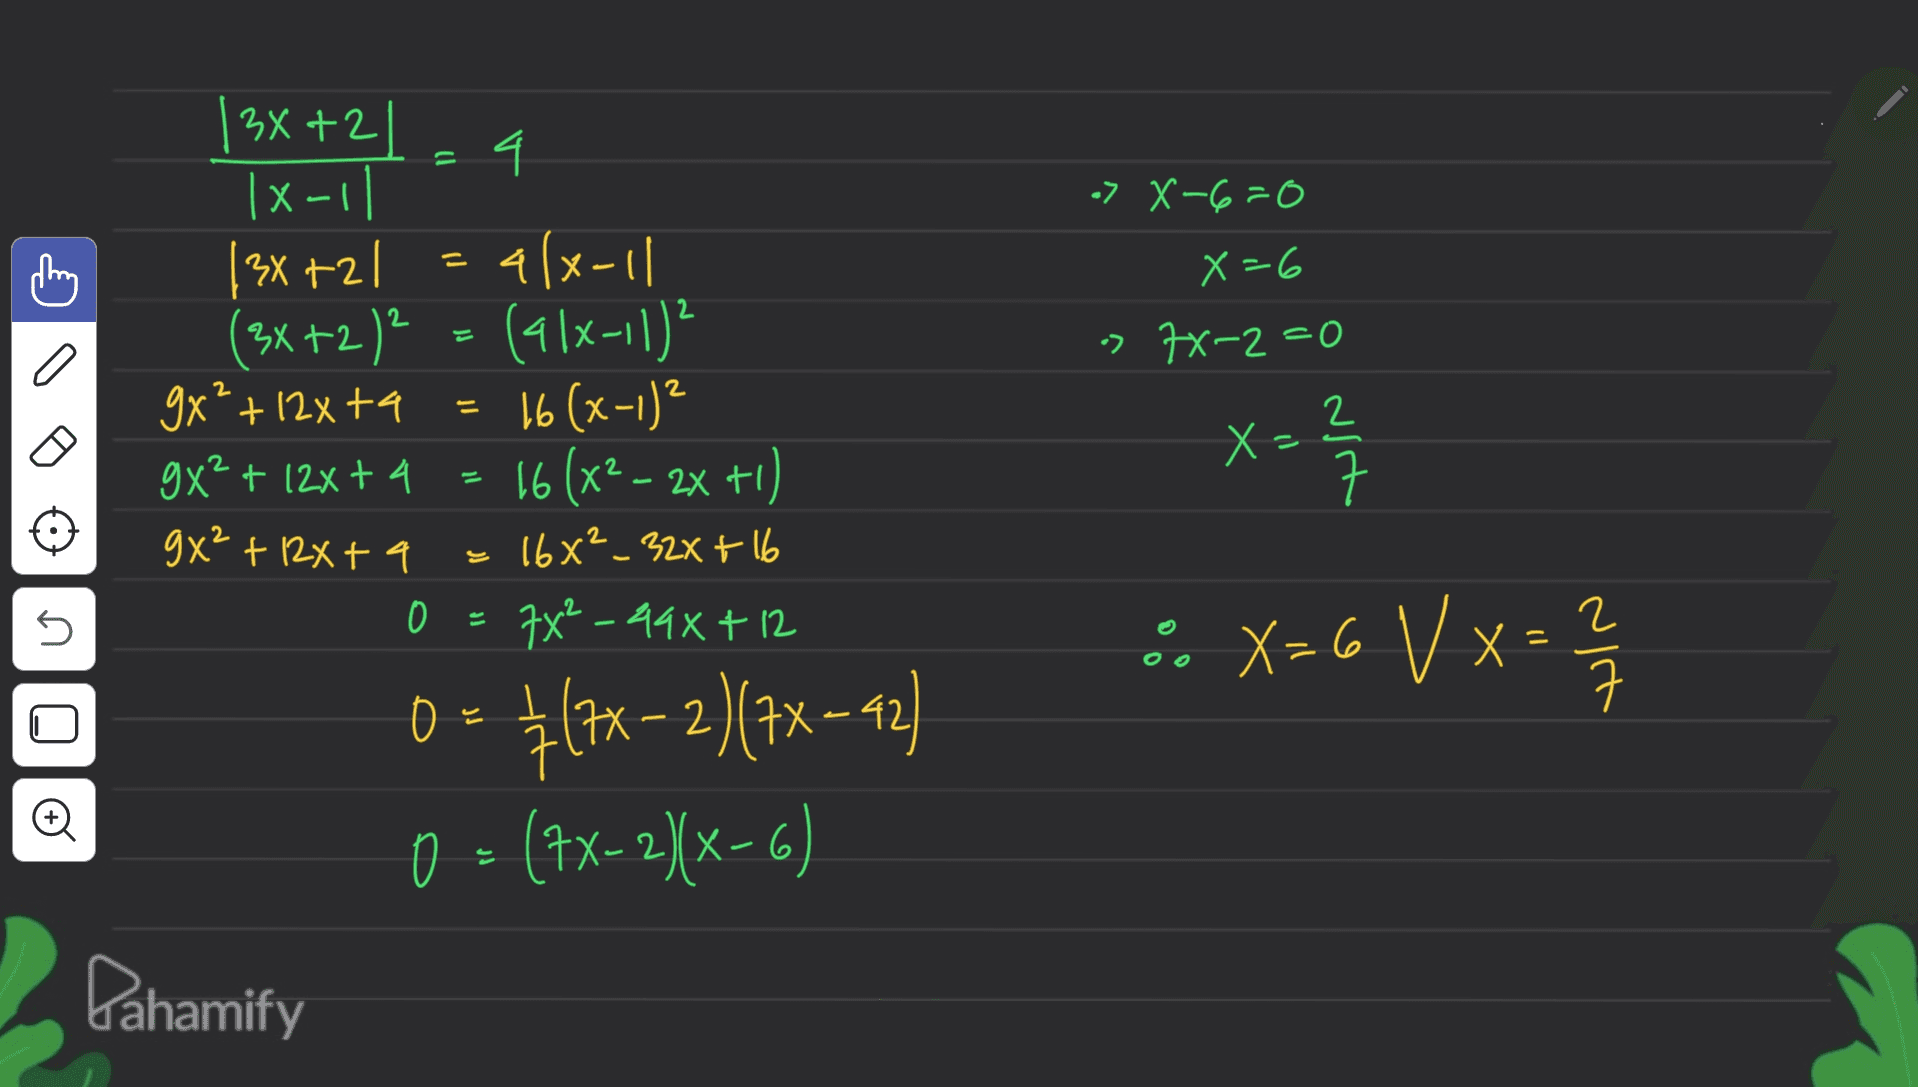 = > X-6=0 id 2 X=6 •> 7x^2=0 2 2 = X= 2 ㅋ 2 |3x+21 4 |x-1| |3x+2l alx-11 (3x+2)² = (alx-11)² (- 9x²+12&ta 16 (x-1)² 9X² + 12x+4 16 (x2 - 2x +1) 16x²_32X+16 0 = 7X²-498+12 0 0= {(2x-2)(7X= 42) 0 = (1x-2/x-6) 11 9x² + 12x + 4 2 :. X=6 V x = 2 / X= 5 ㅋ 2 © Pahamify 